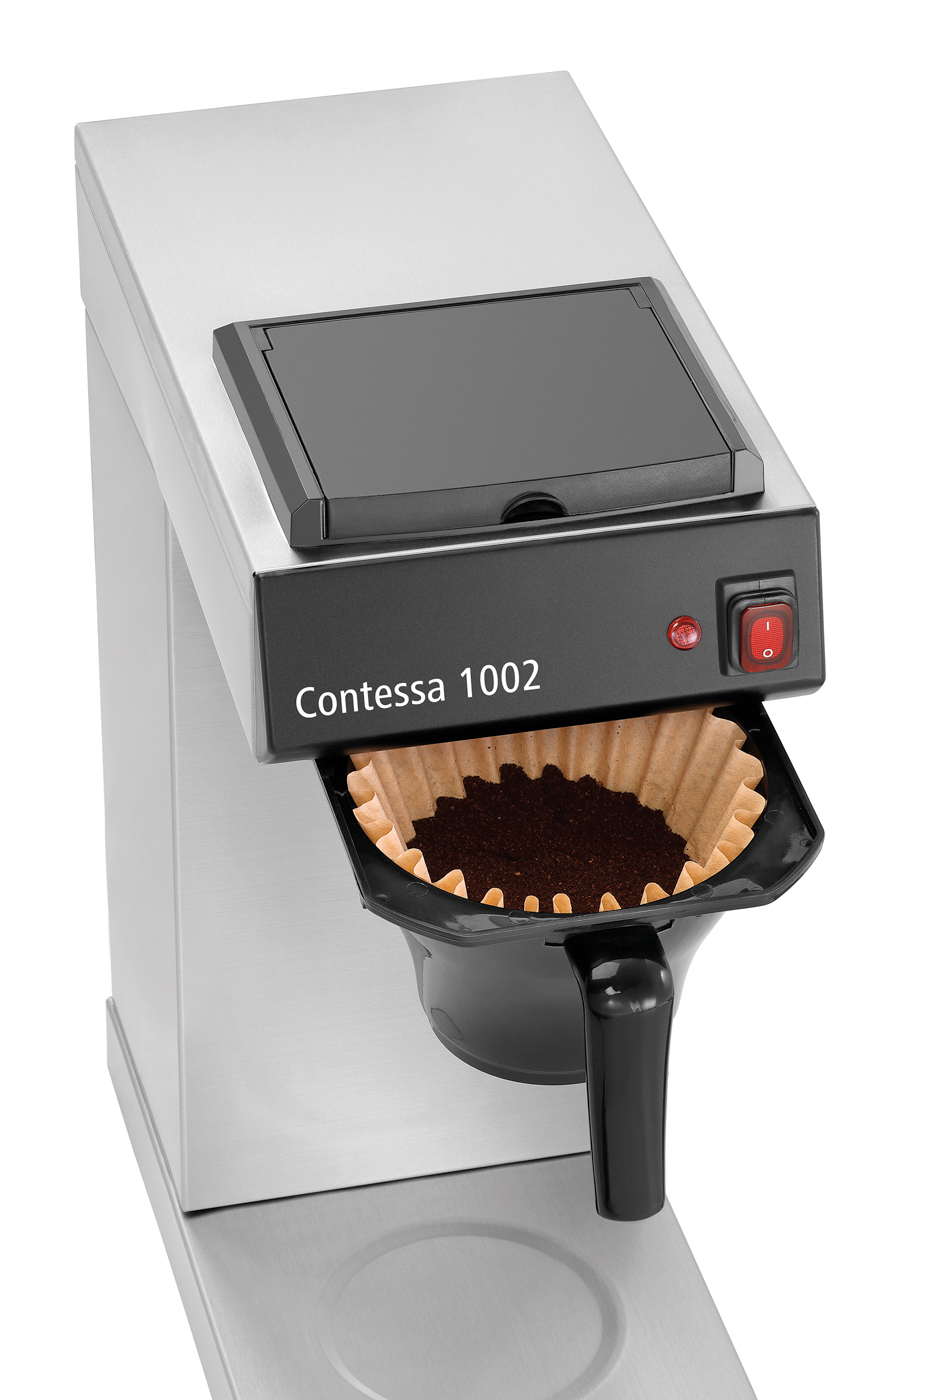 Bartscher Kaffeemaschine Contessa 1002 | Steuerung: Kippschalter | Maße: 21,5 x 40 x 520 cm. Gewicht: 6,5 kg